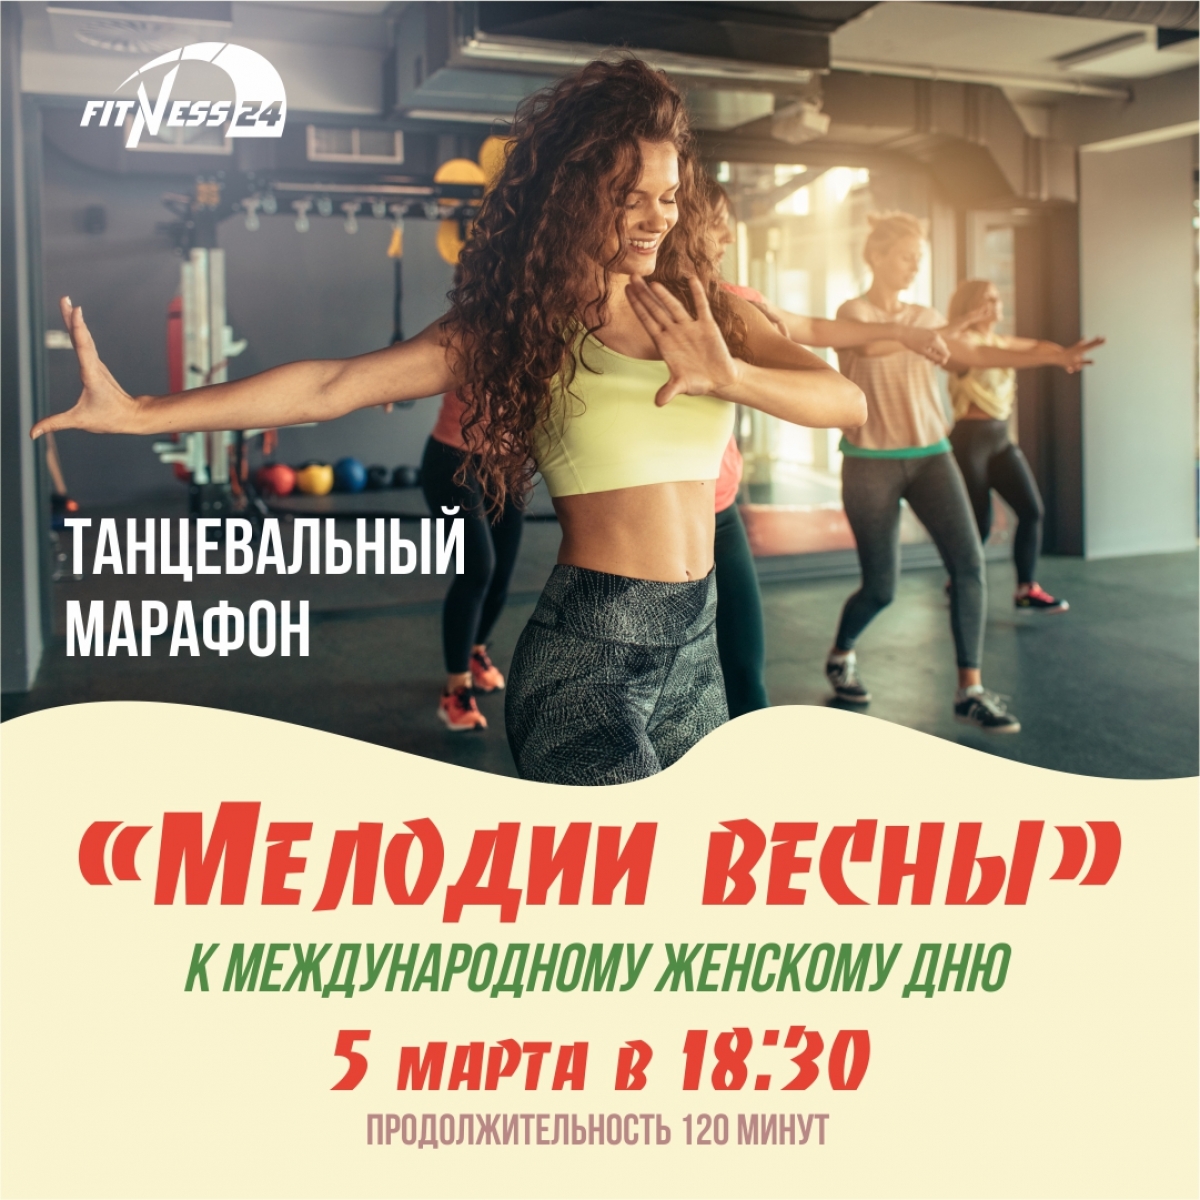 Танцевальный марафон «Мелодии весны» в Fitness24 Ветеранов!